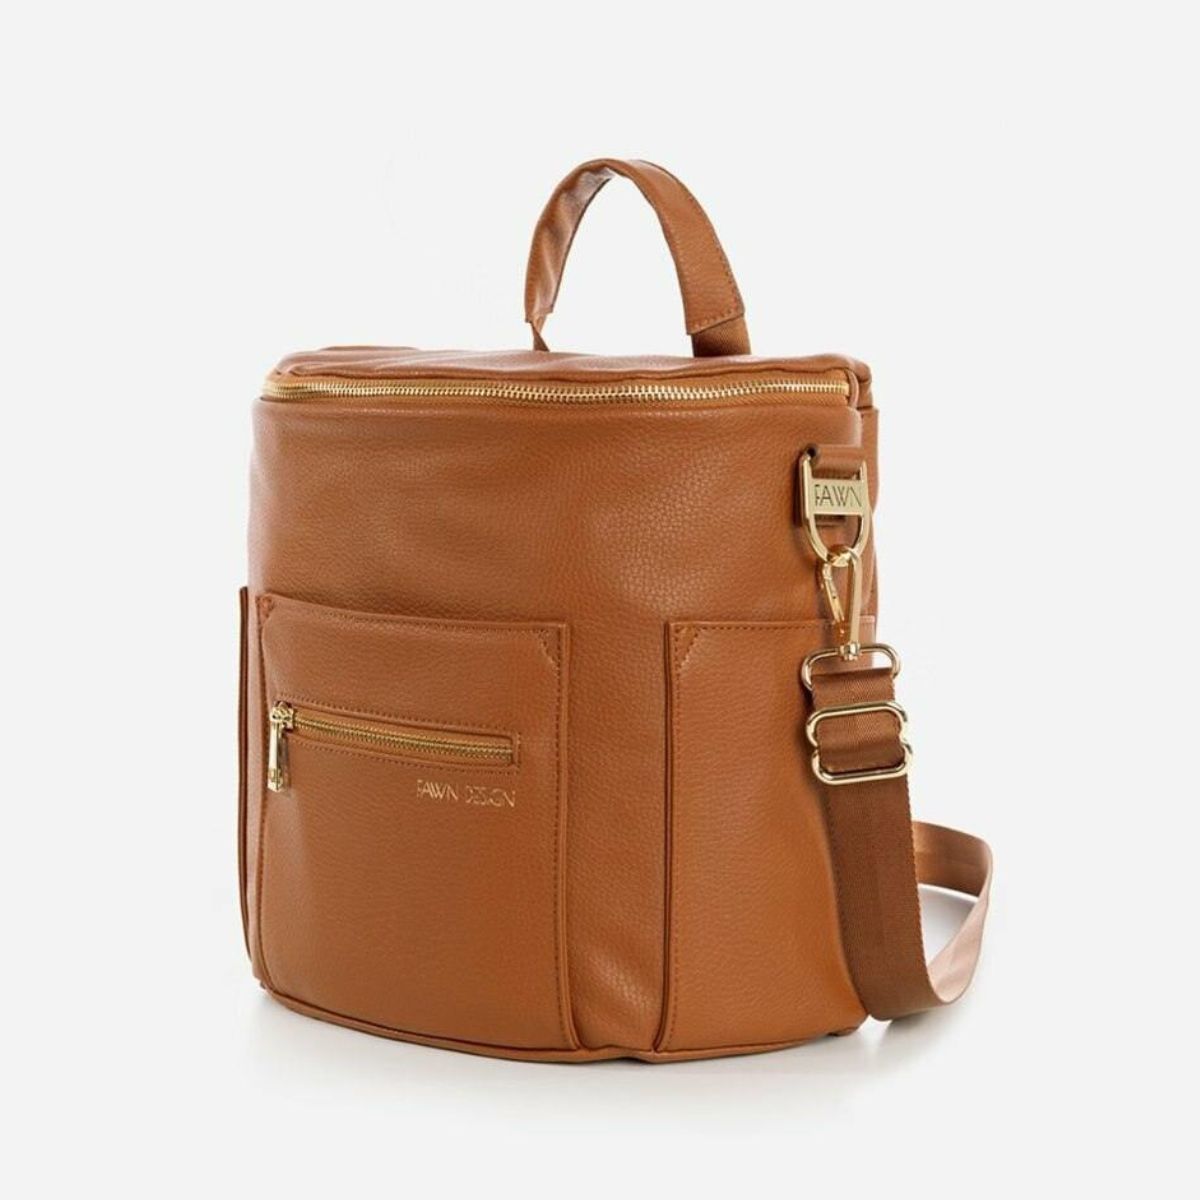 Fawn Design Mini Bag - Brown